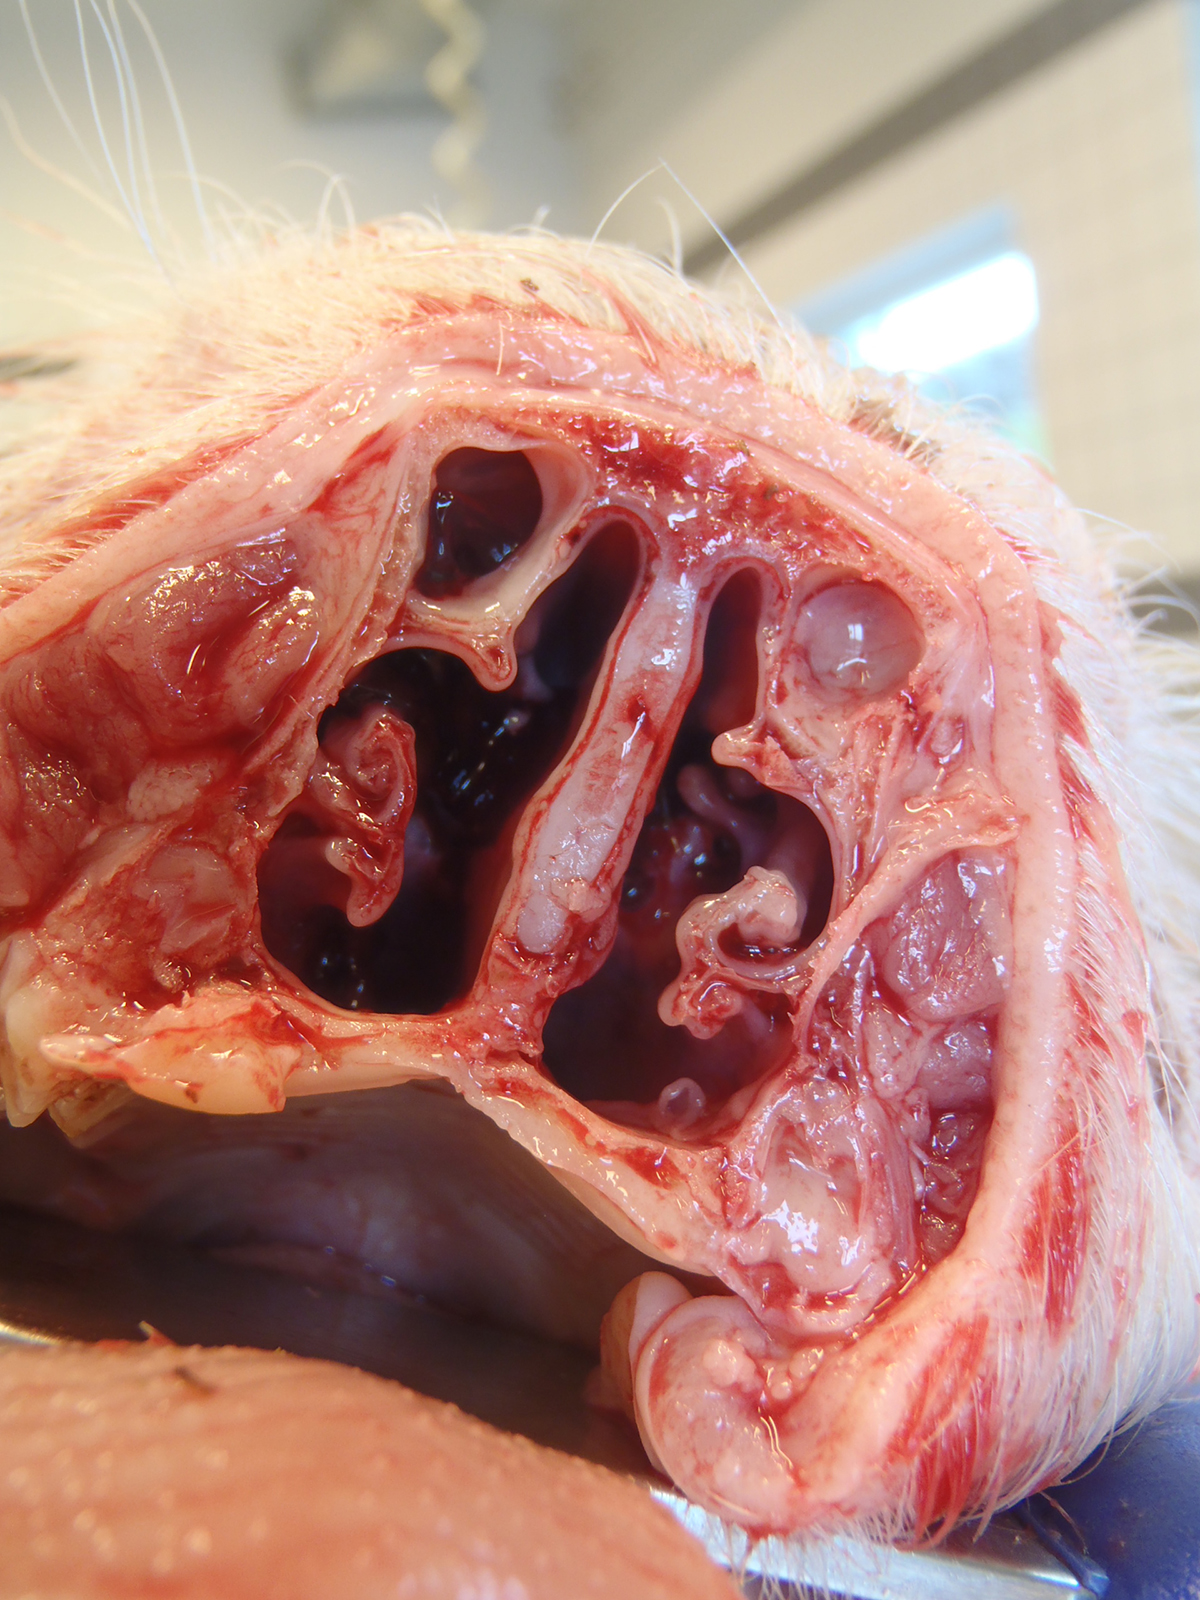 Figur 2: Foto af tværsnit af tryner med mulig PCMV-infektion. Viser ødelæggelse af knoglevæv (conchae atrofi). Foto: Laboratorium for Svinesygdomme.